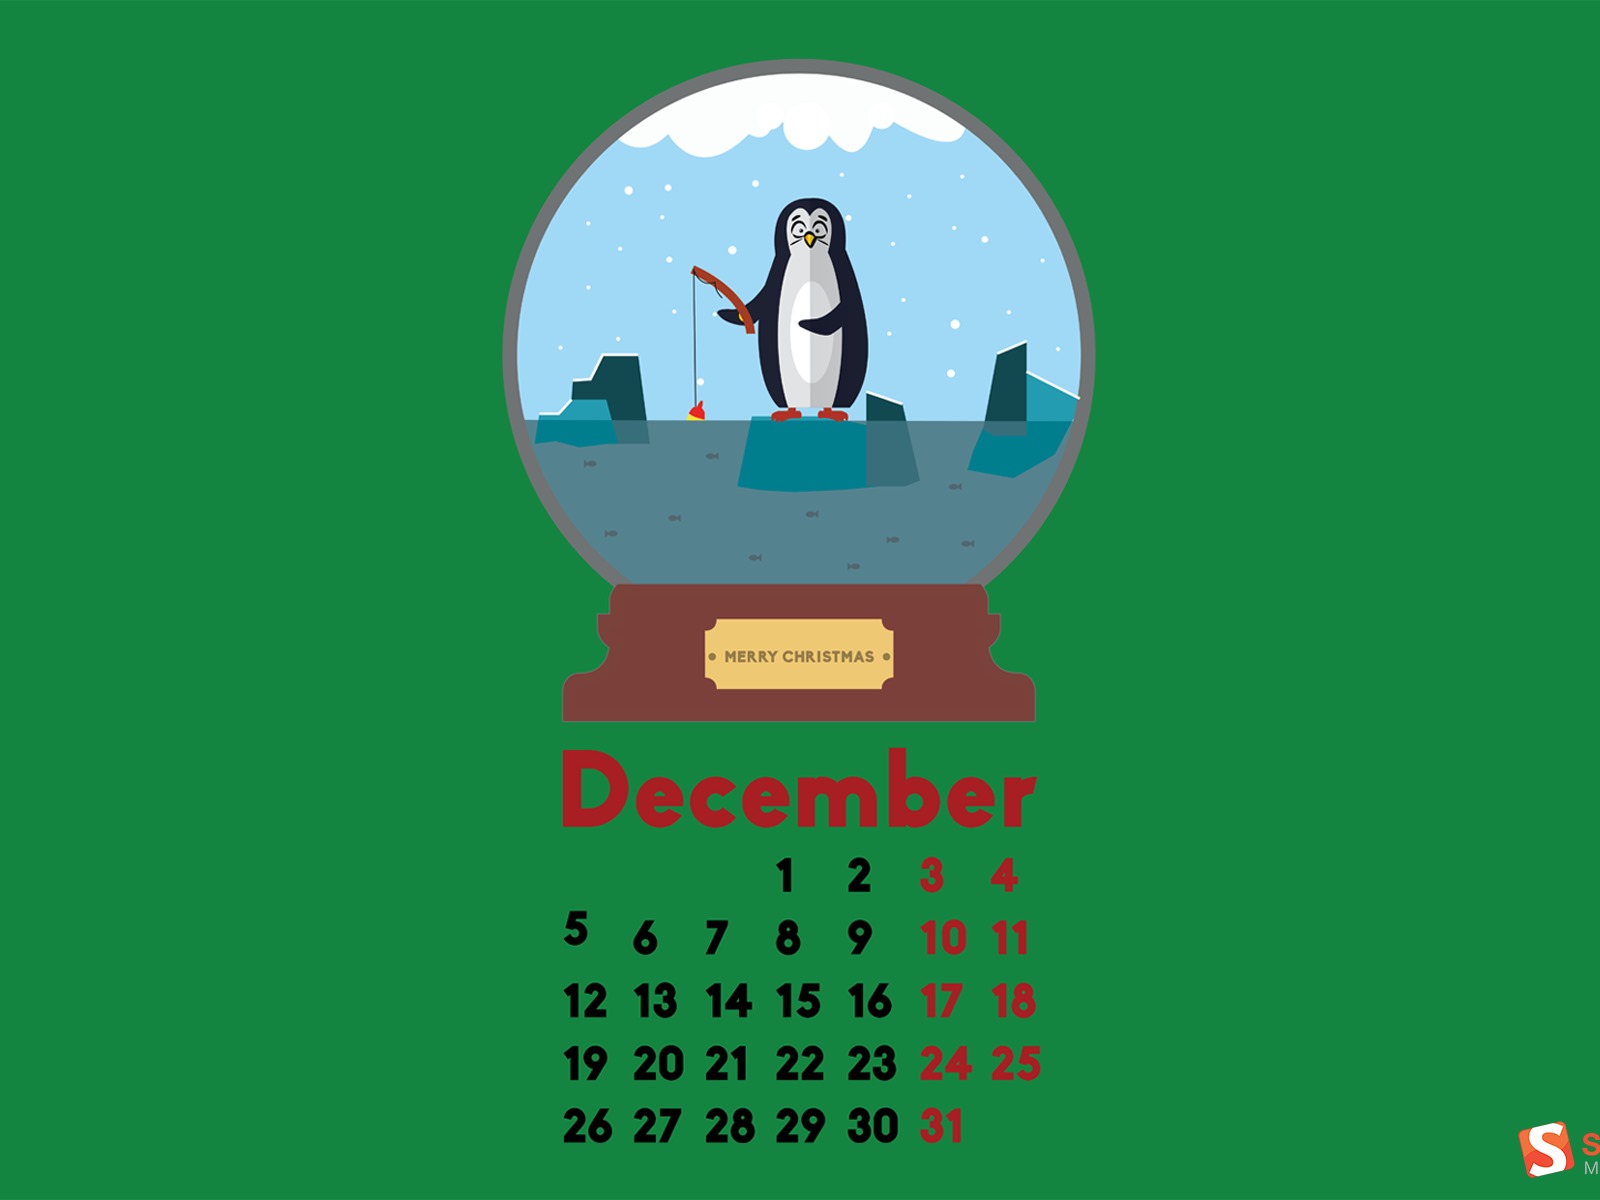 December 2016 Christmas theme calendar wallpaper (2) #8 - 1600x1200